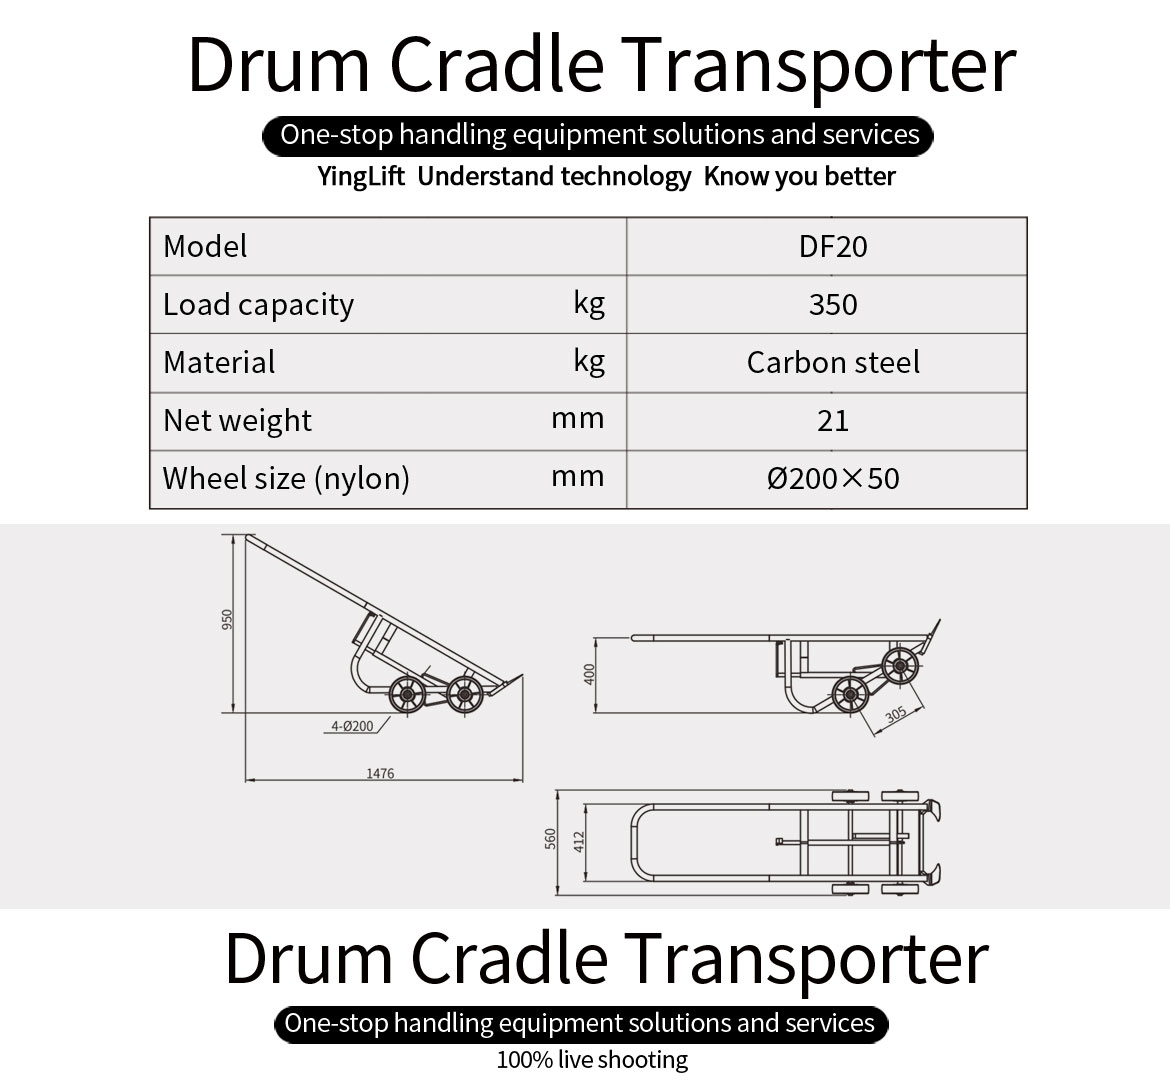 Drum Cradle Transporter